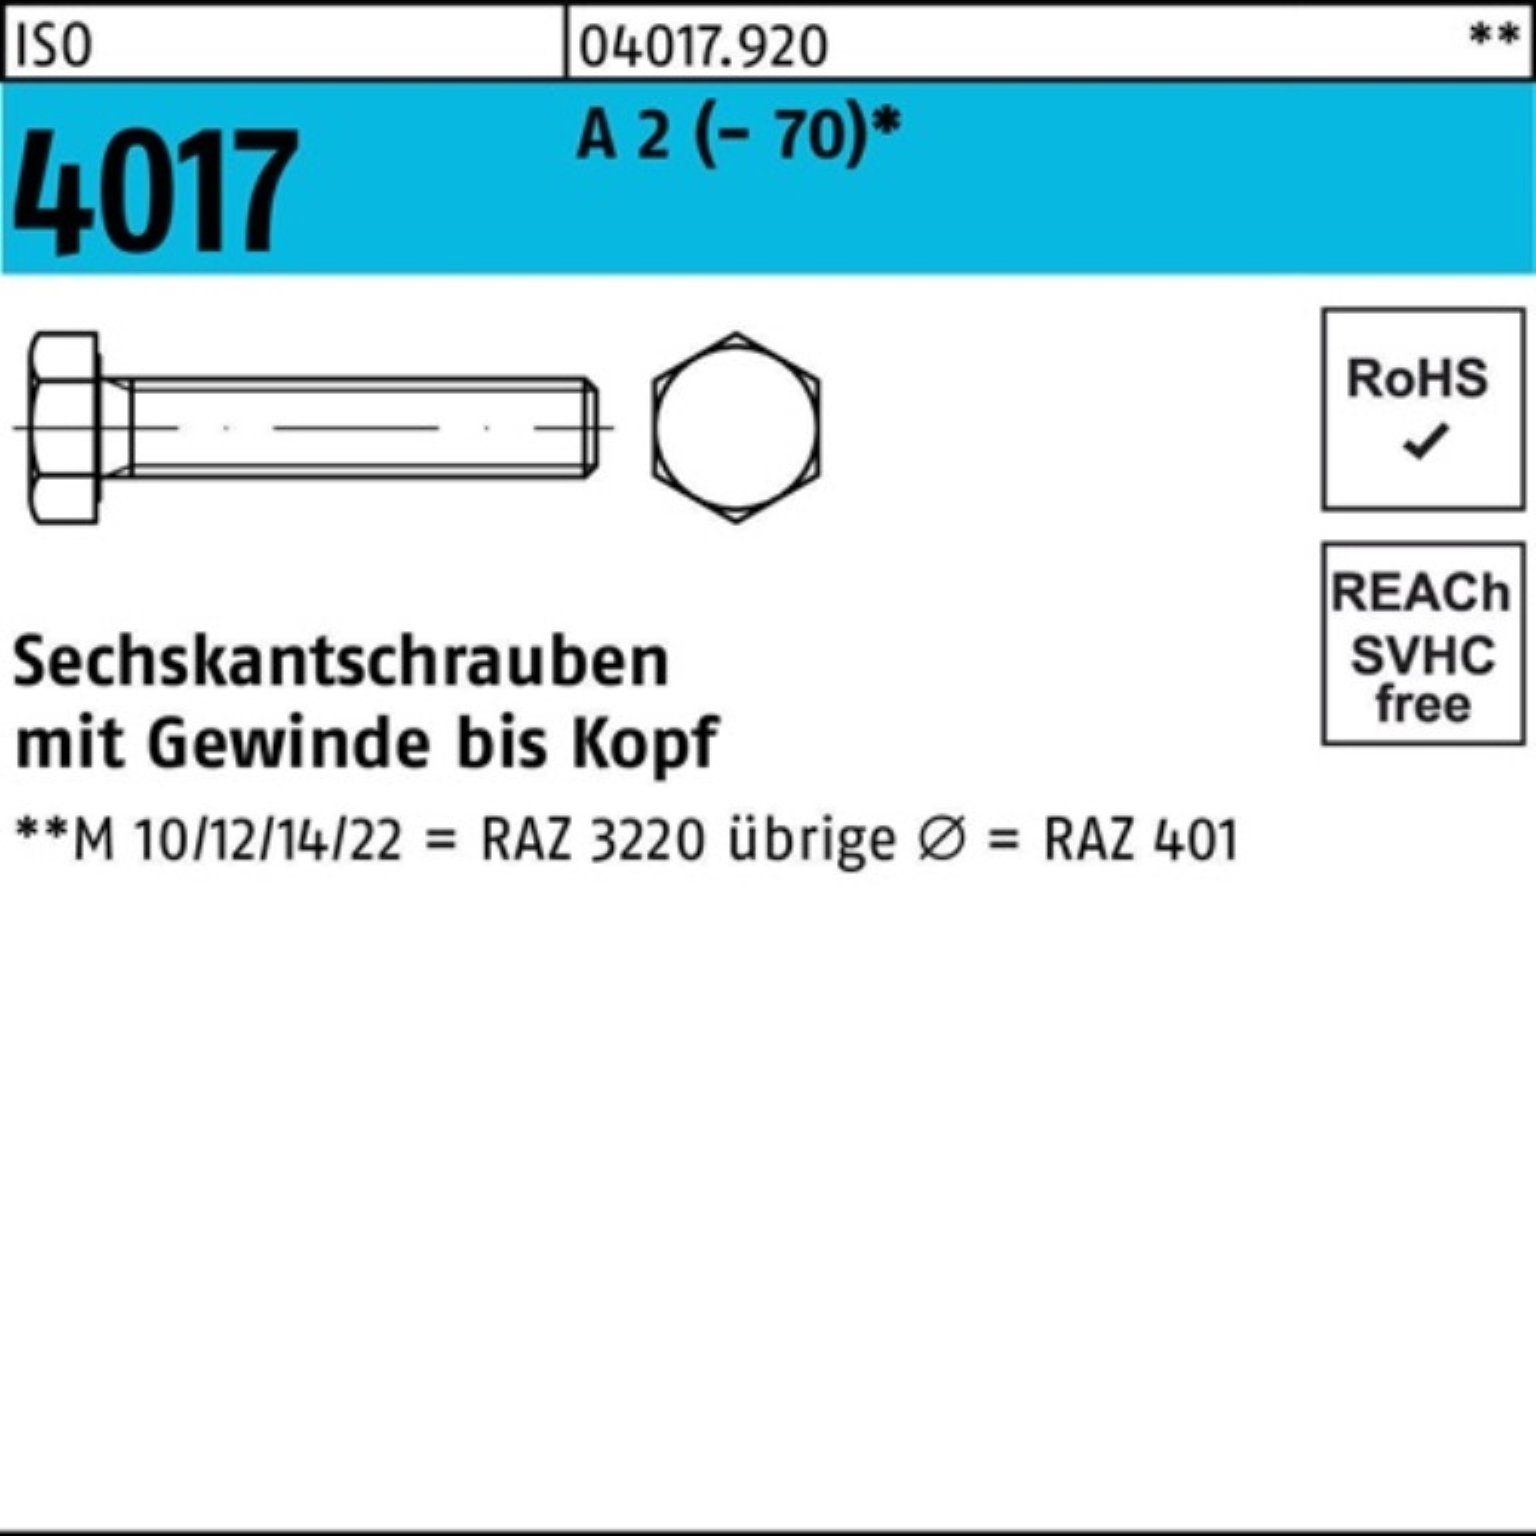 Bufab Sechskantschraube 100er Pack Sechskantschraube ISO 4017 VG M10x 190 A 2 (70) 1 Stück